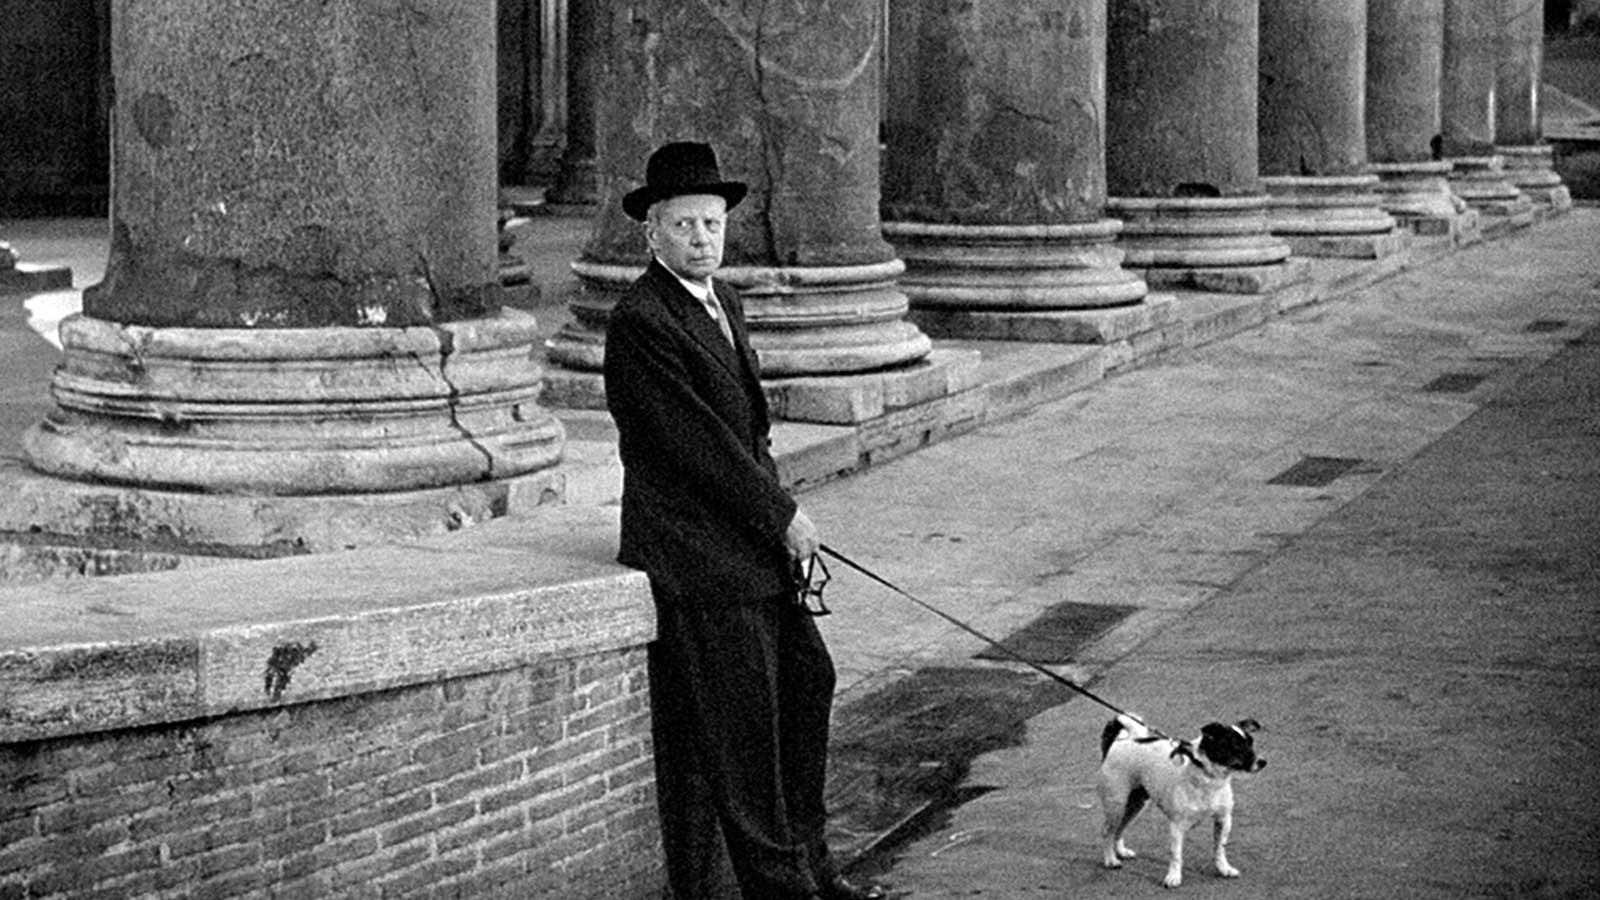 پیرمرد و سگش در فیلم اومبرتو دی ساخته سال 1952